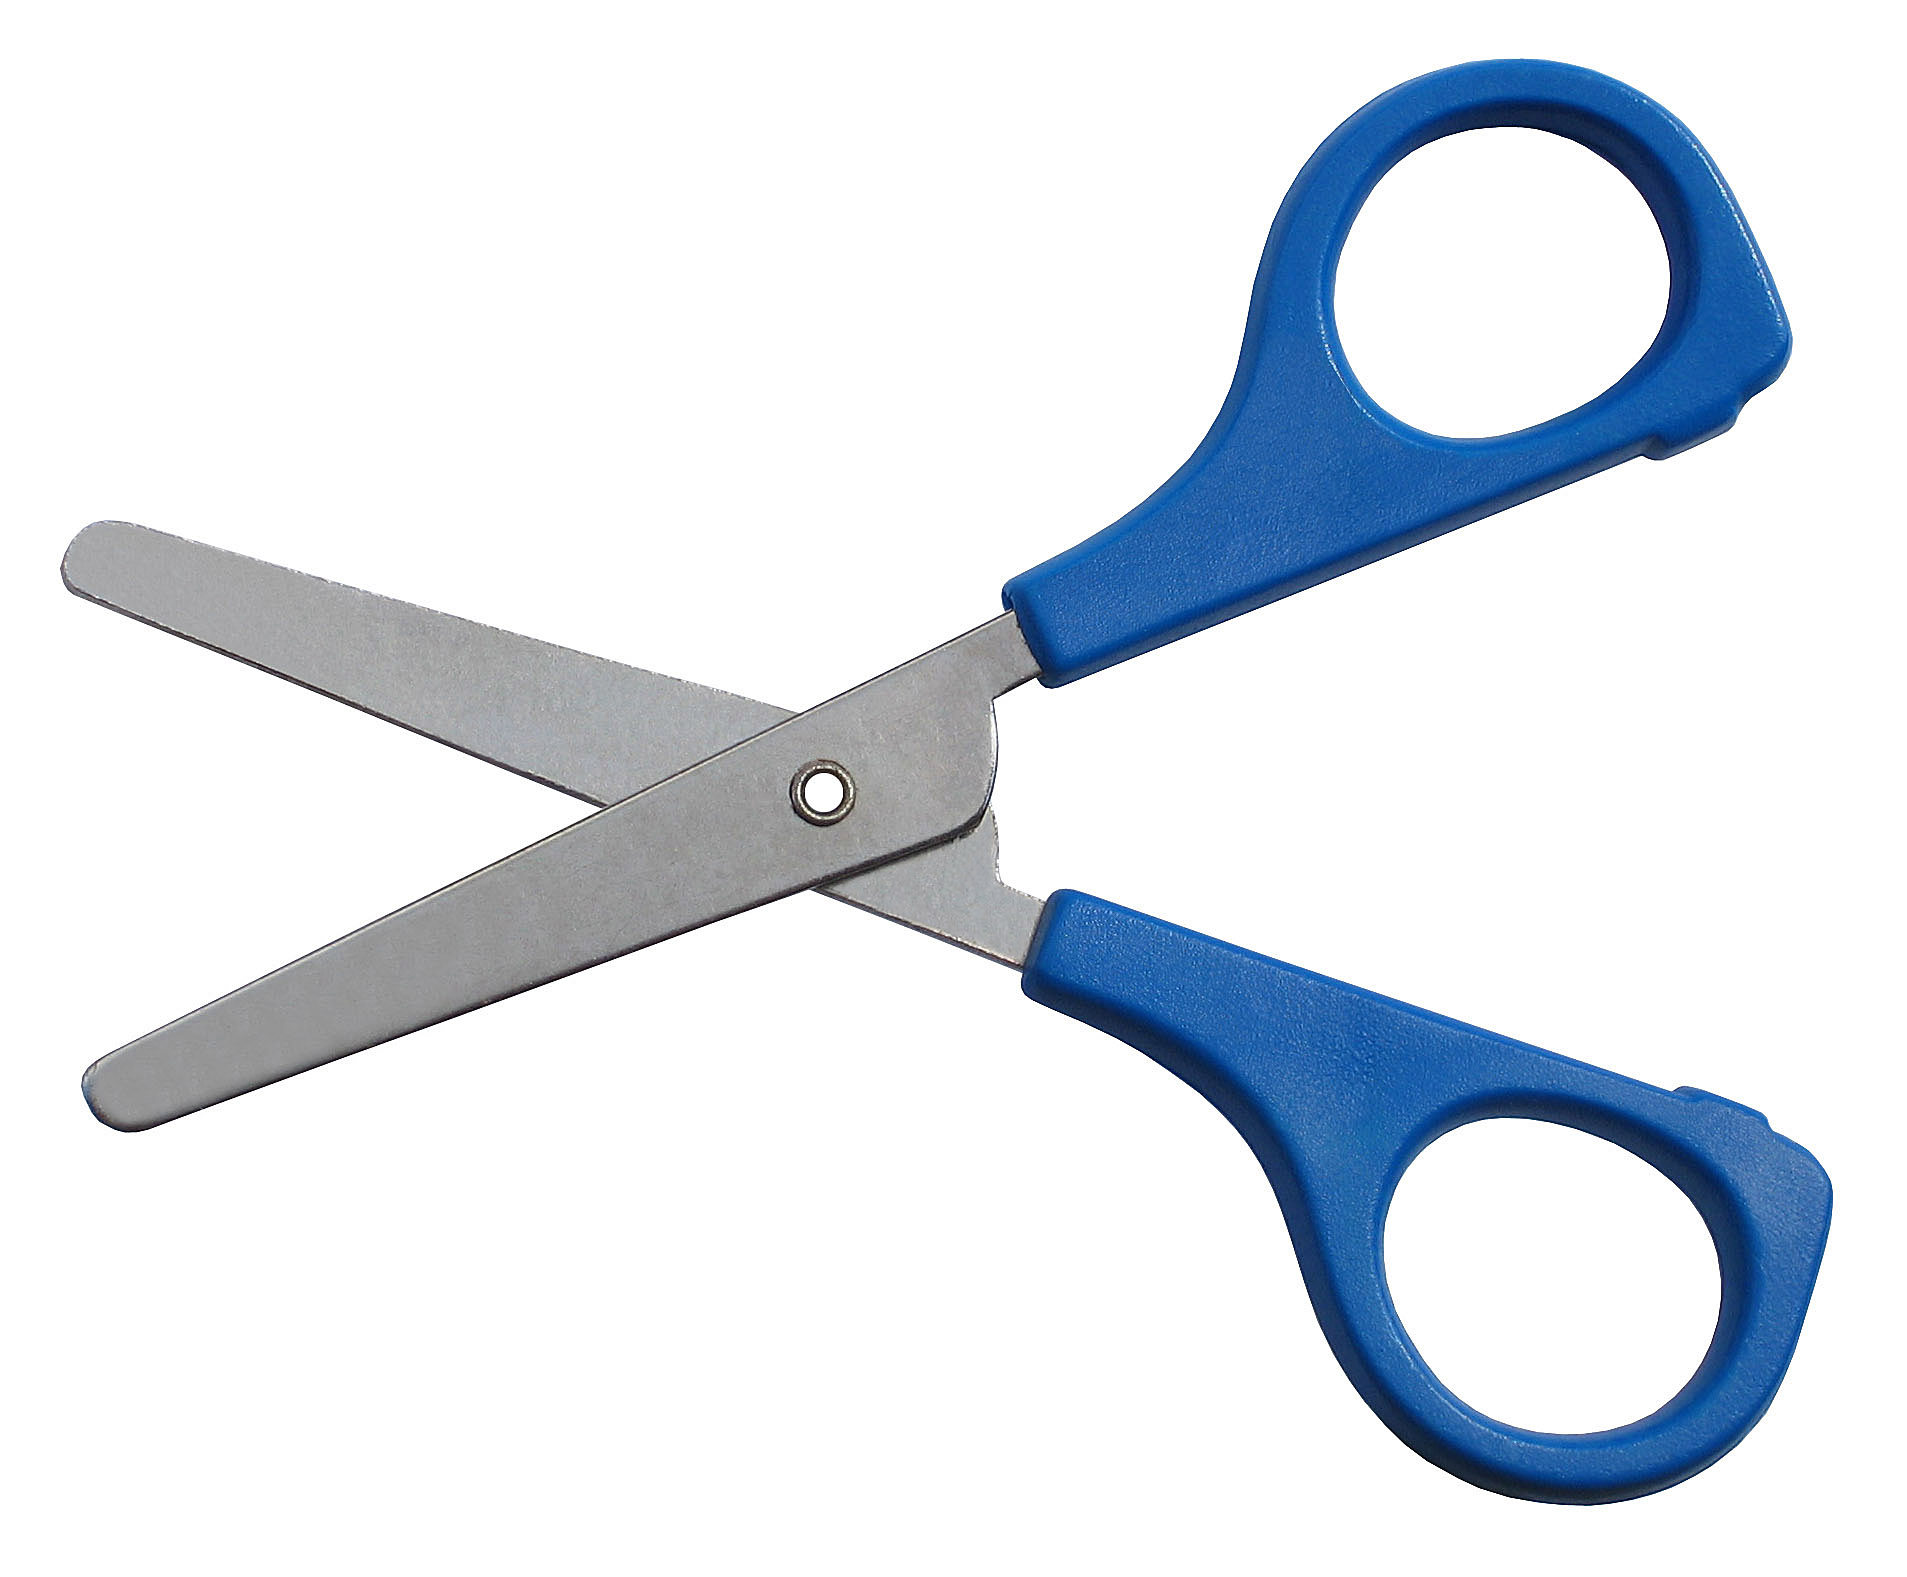 Scissors Cutting Clipart